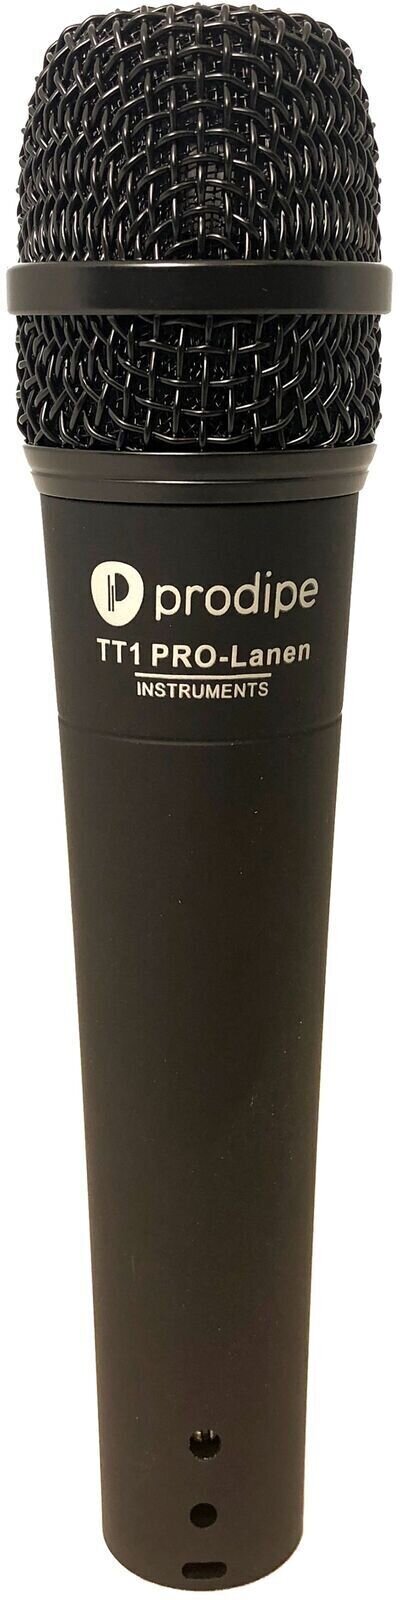 Microphone dynamique pour instruments Prodipe TT1 Pro-Lanen Inst Microphone dynamique pour instruments